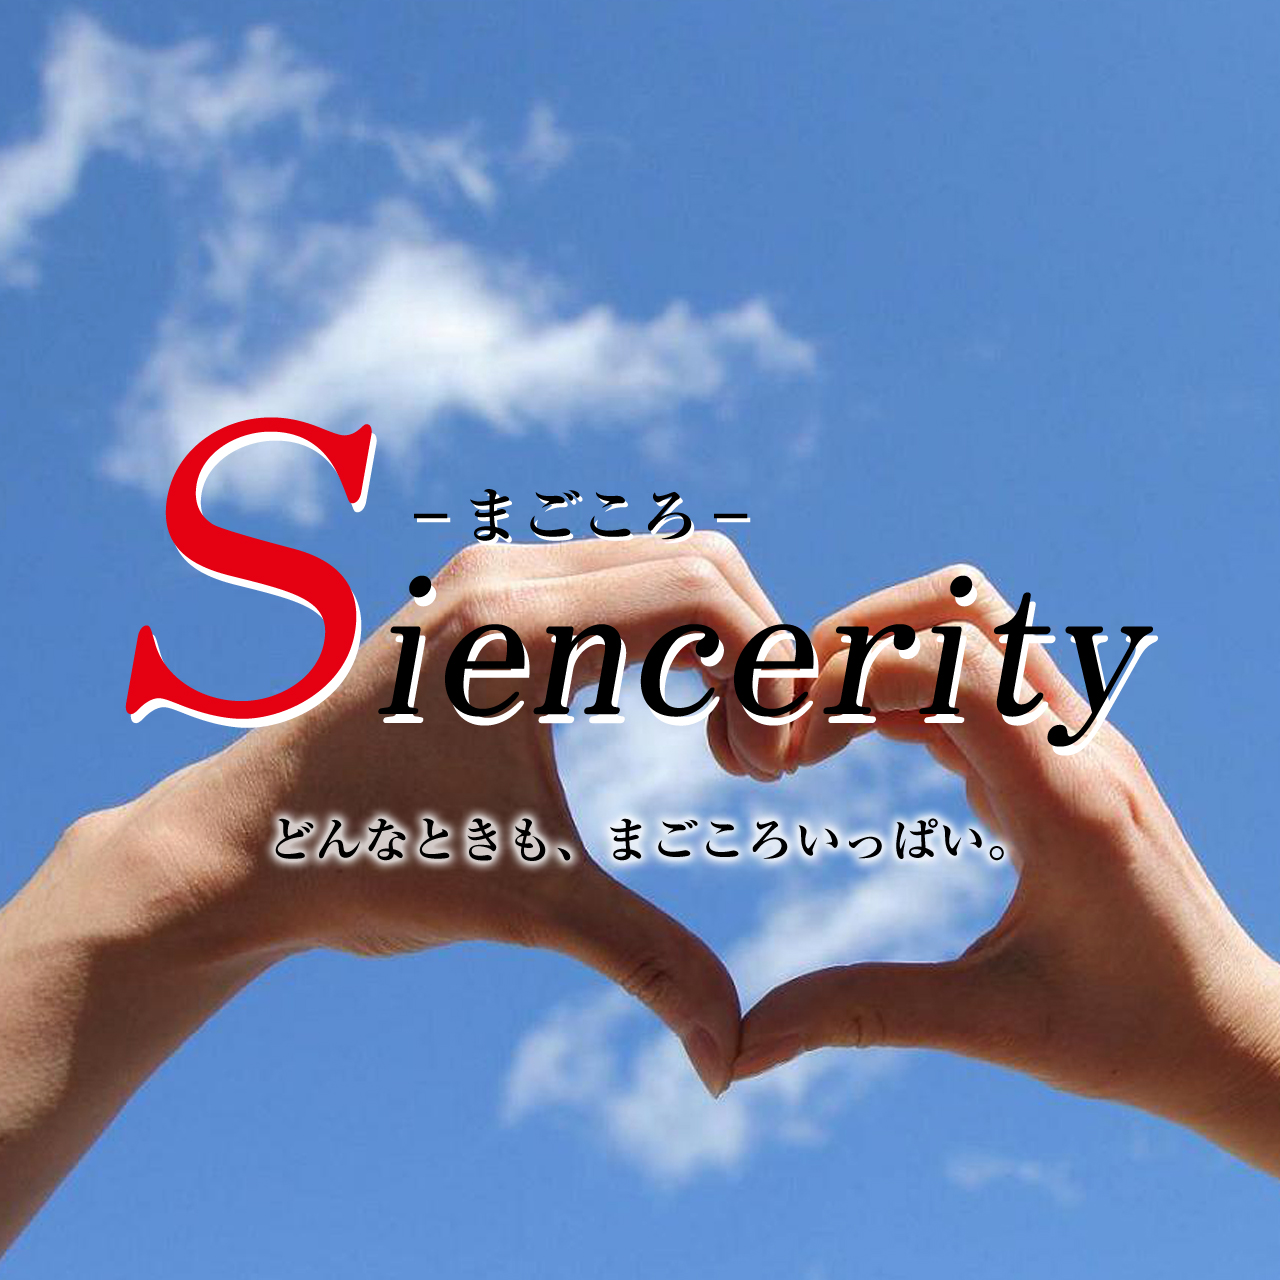 Siencerity